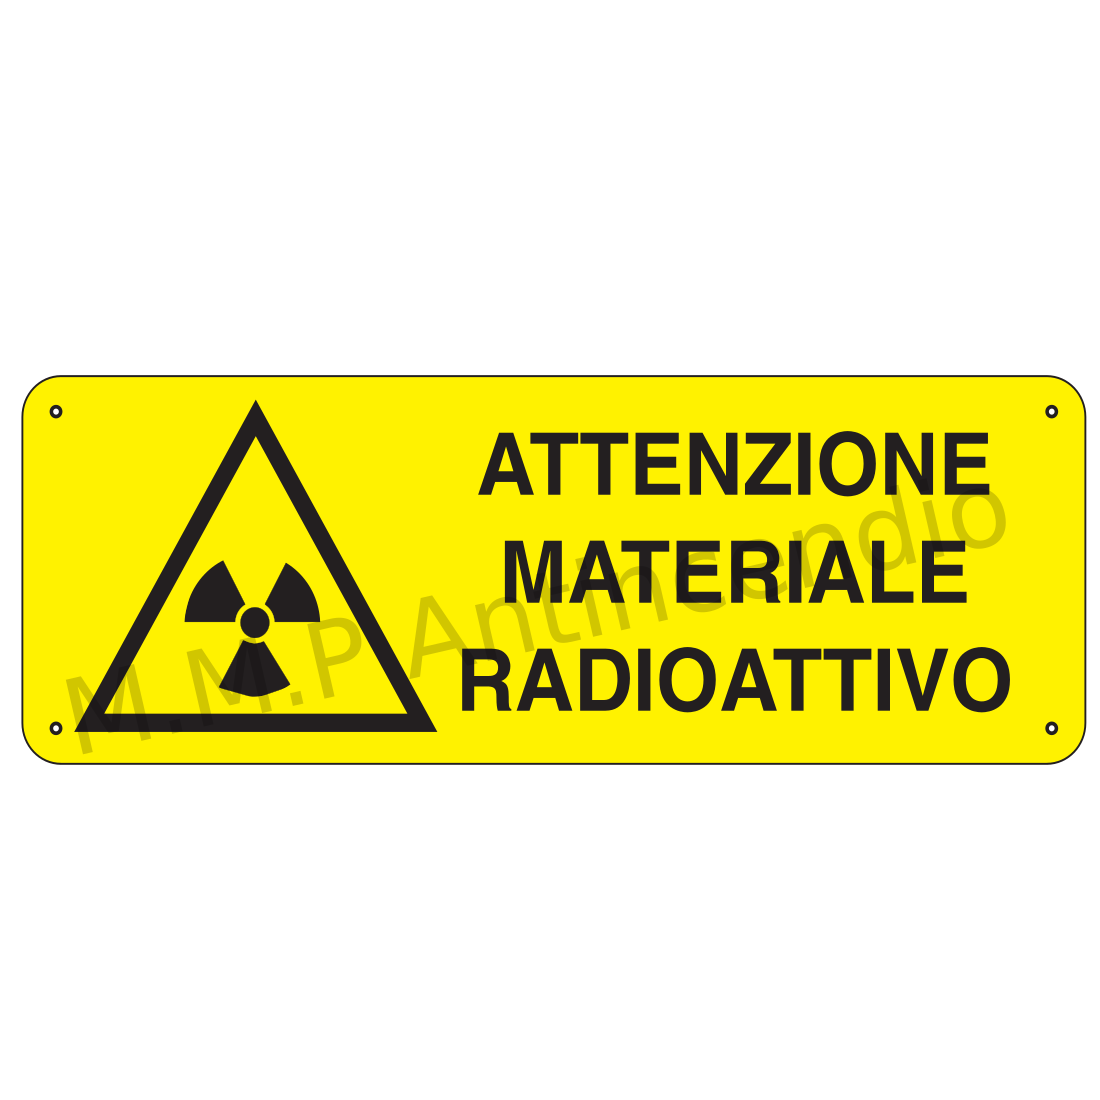 Attenzione materiale radioattivo